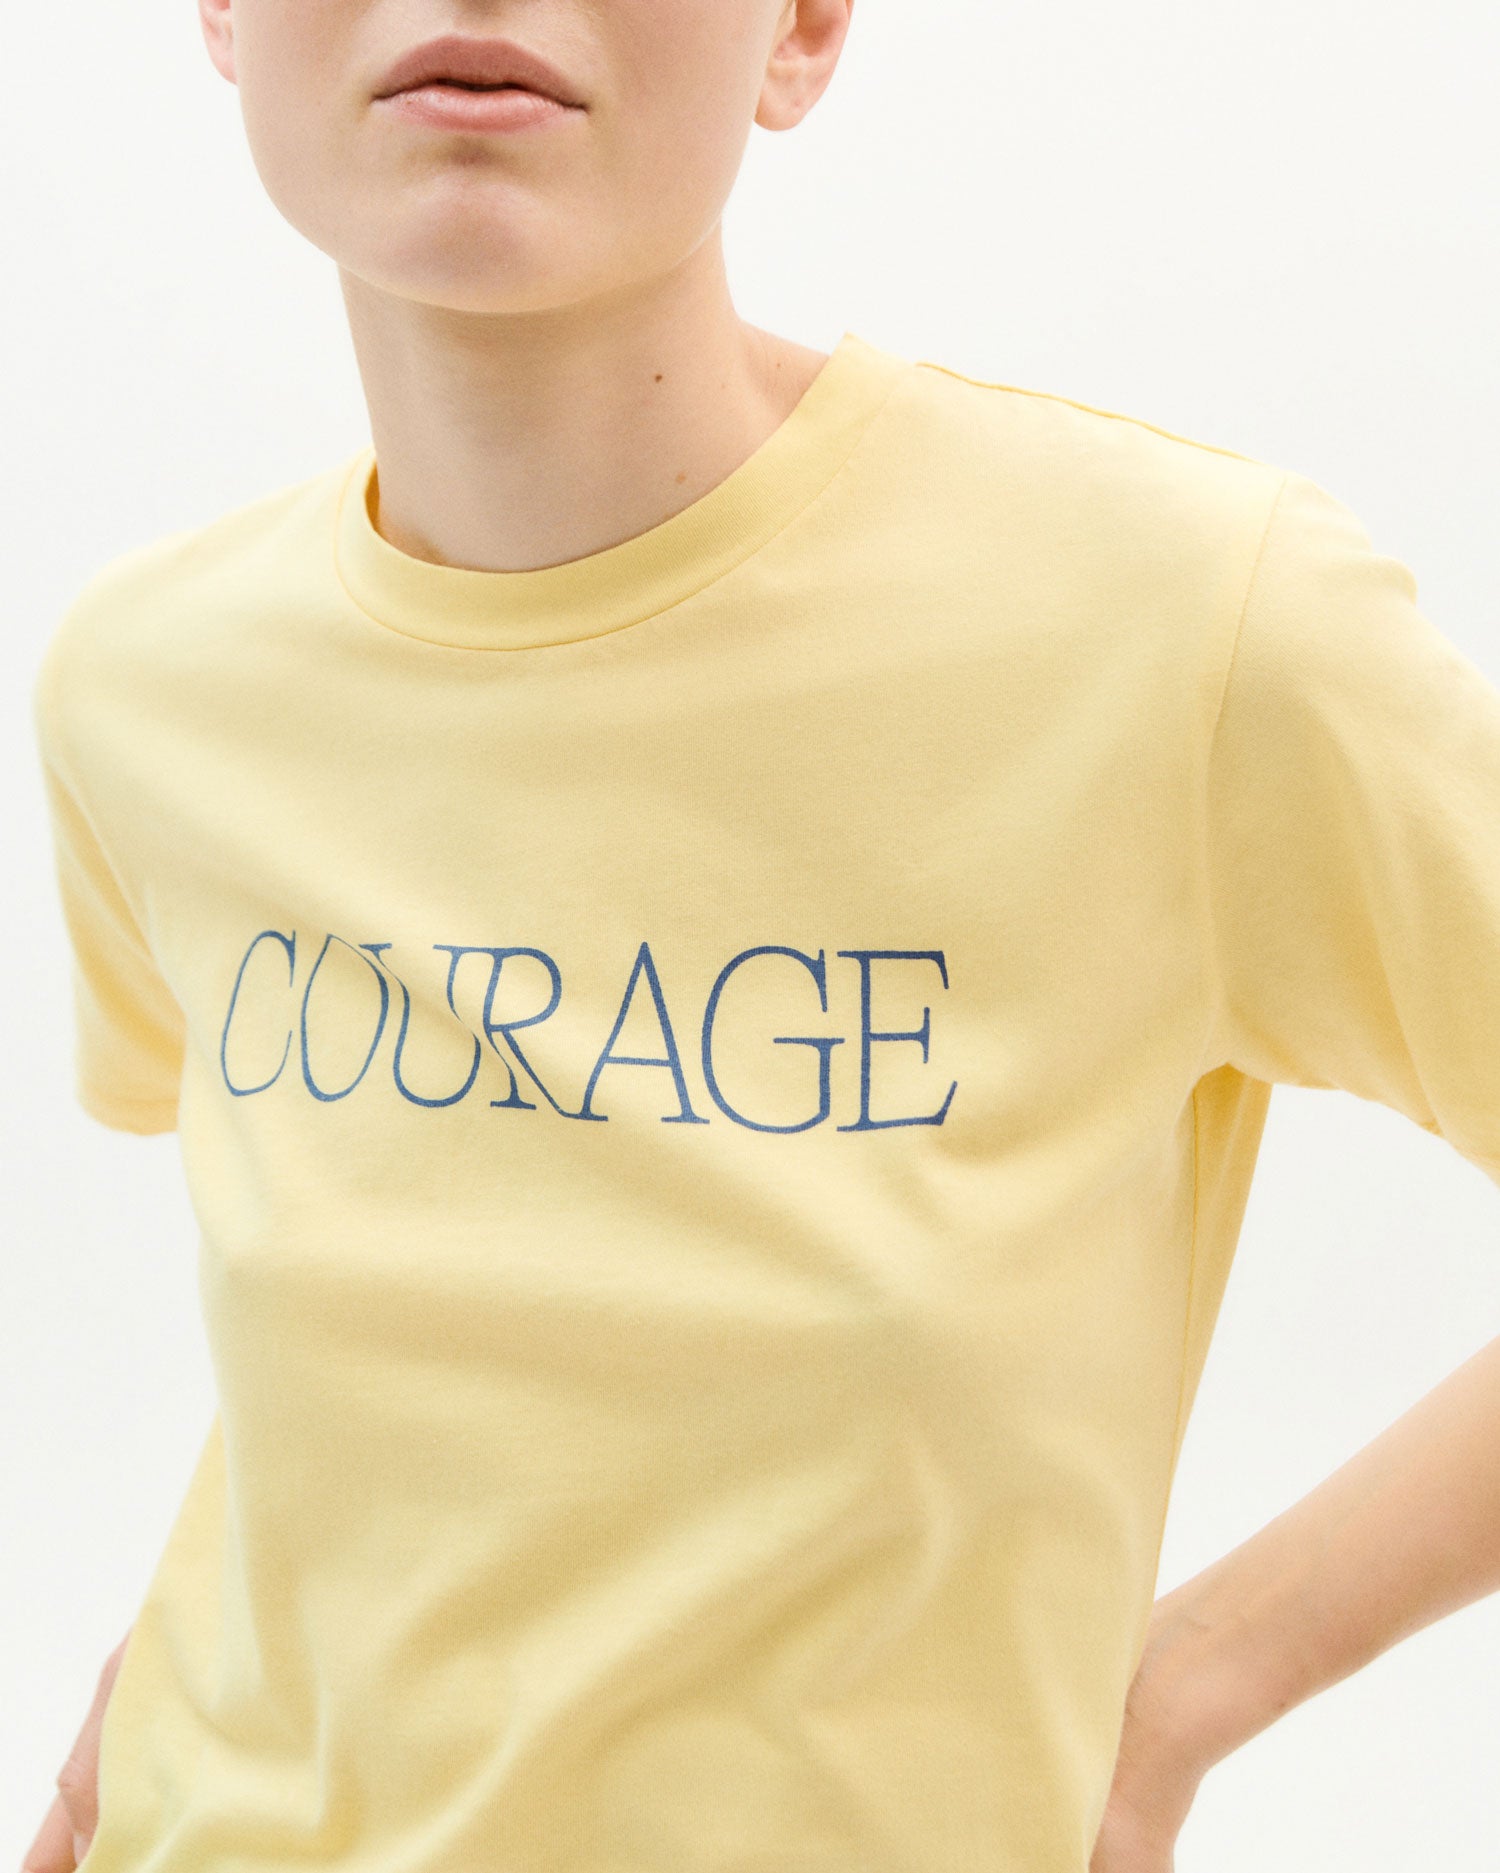 Courage T-Shirt M - Thinking Mu